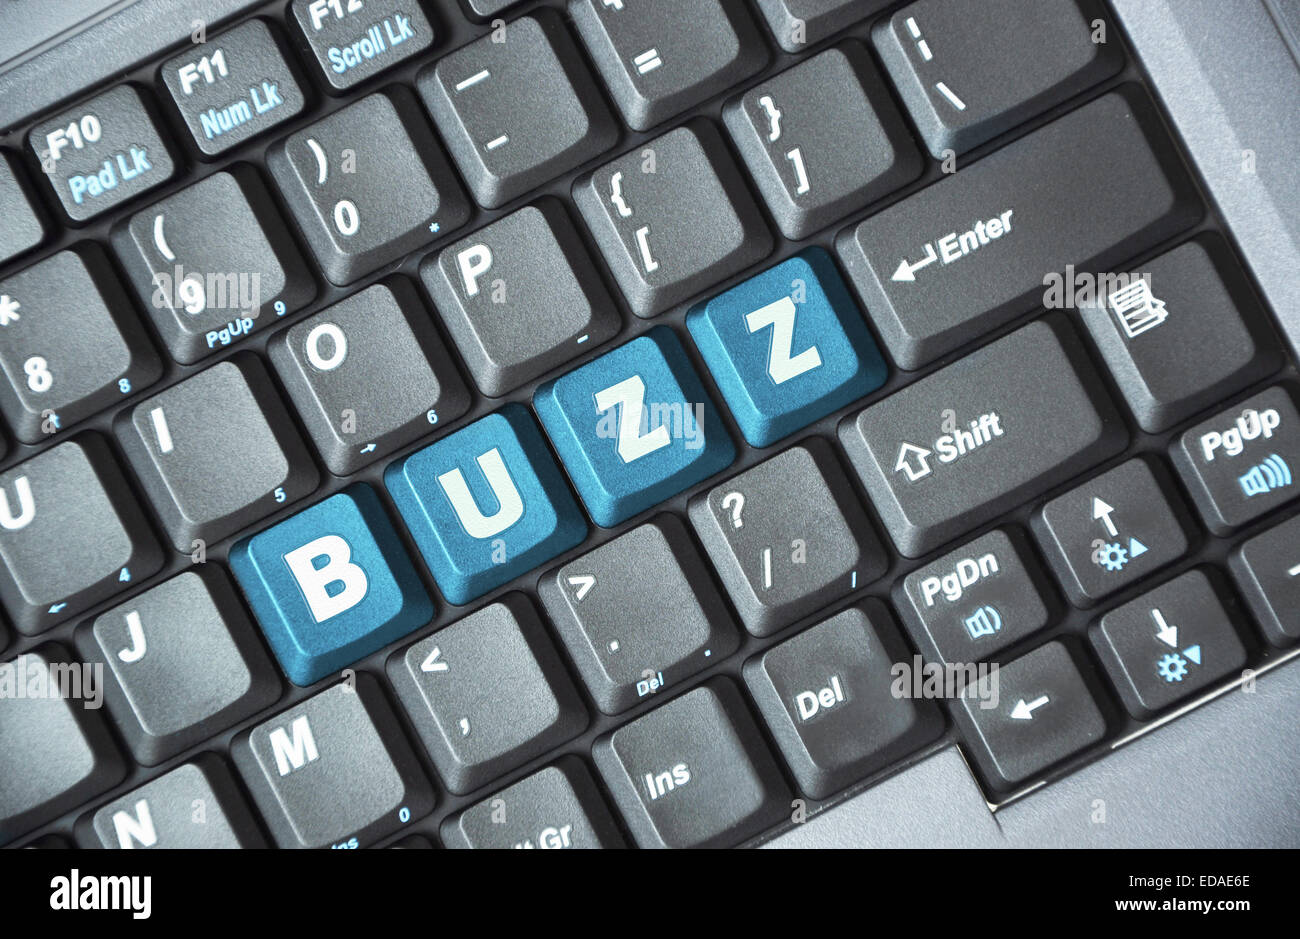 Blue buzz tecla del teclado Foto de stock